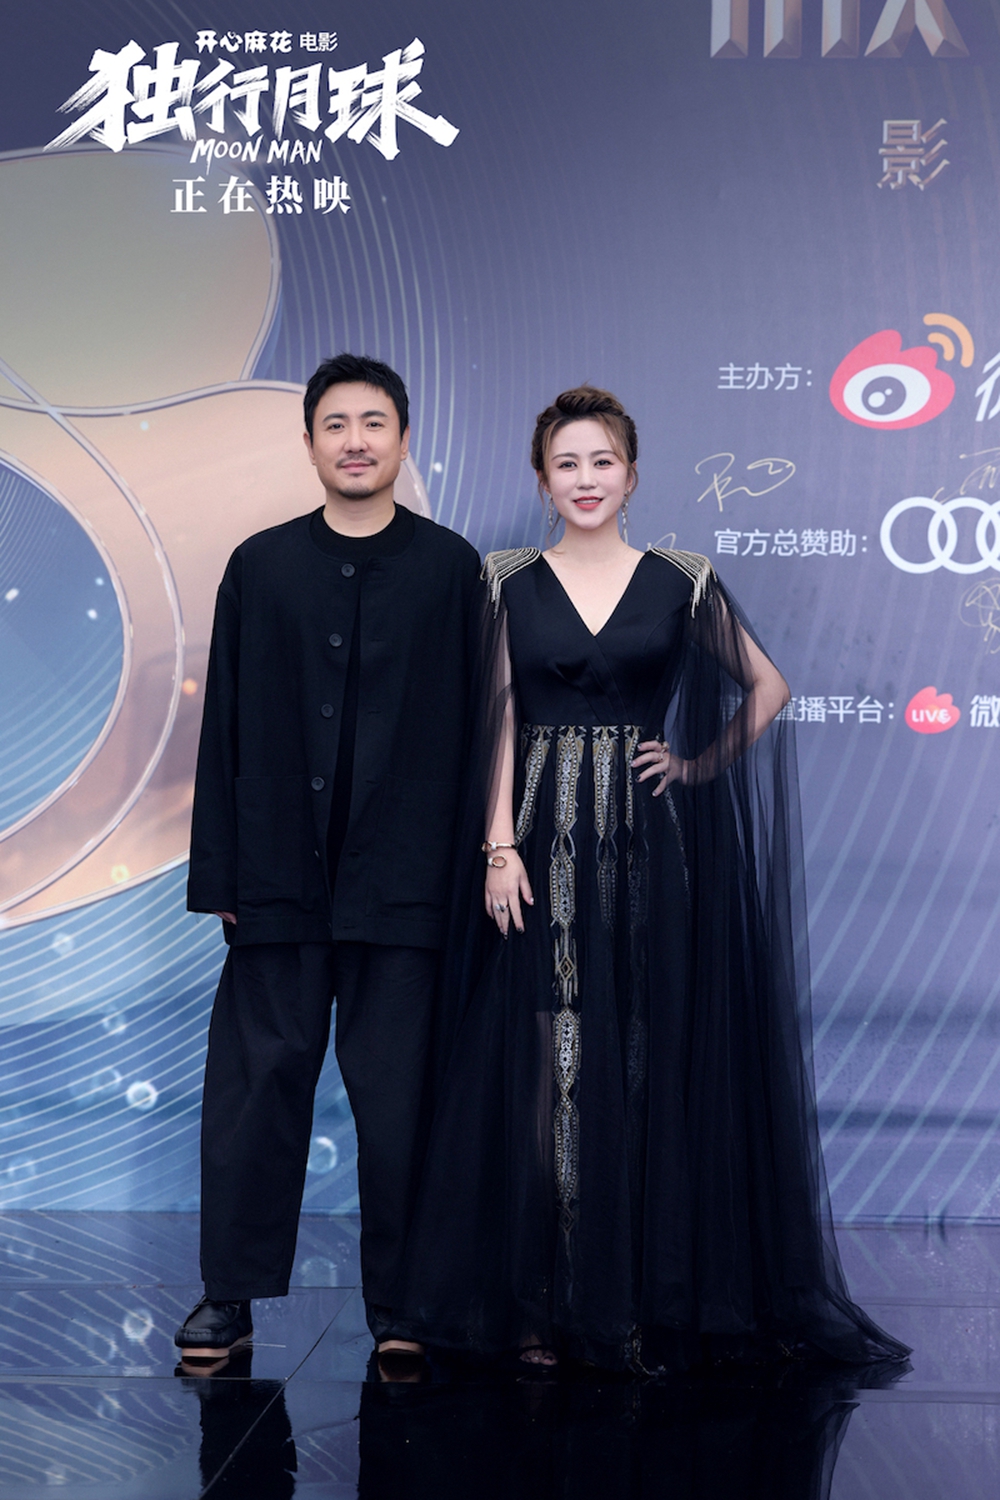 《独行月球》电影获年度最受欢迎影片 沈腾马丽获最受欢迎男女演员